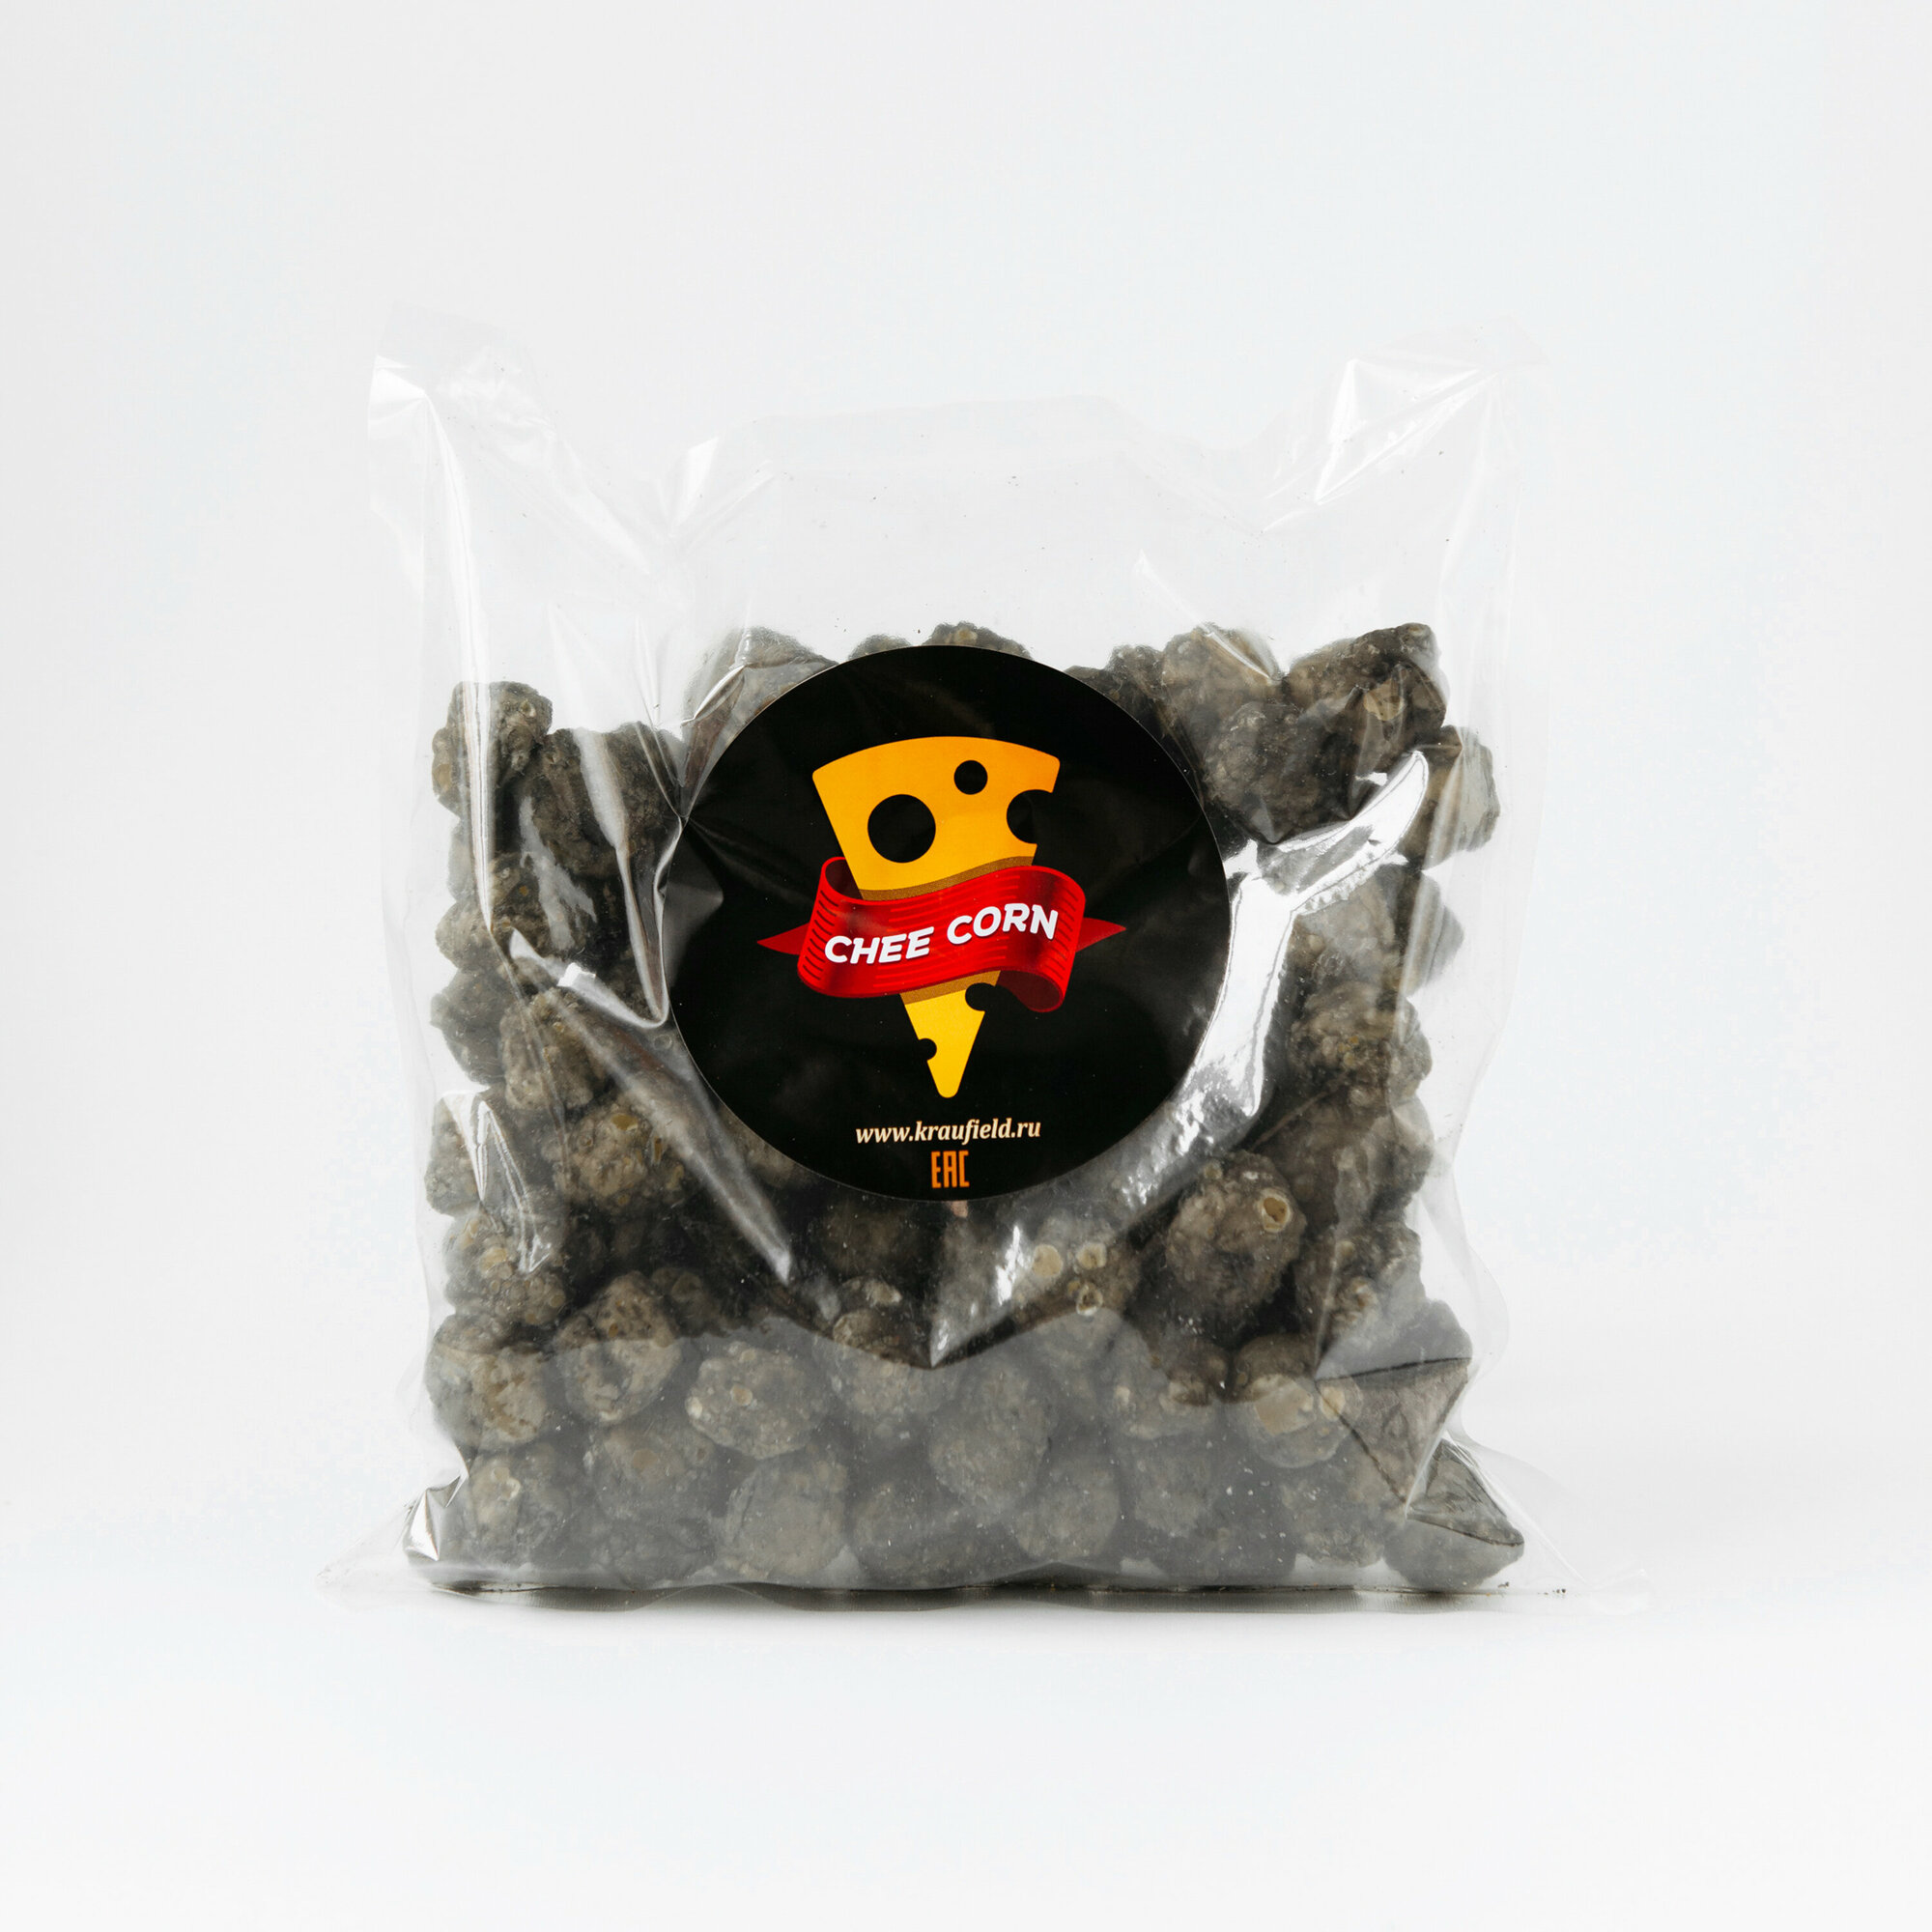 Сырные шарики чикорн со вкусом черной икры Cheecorn, 500г